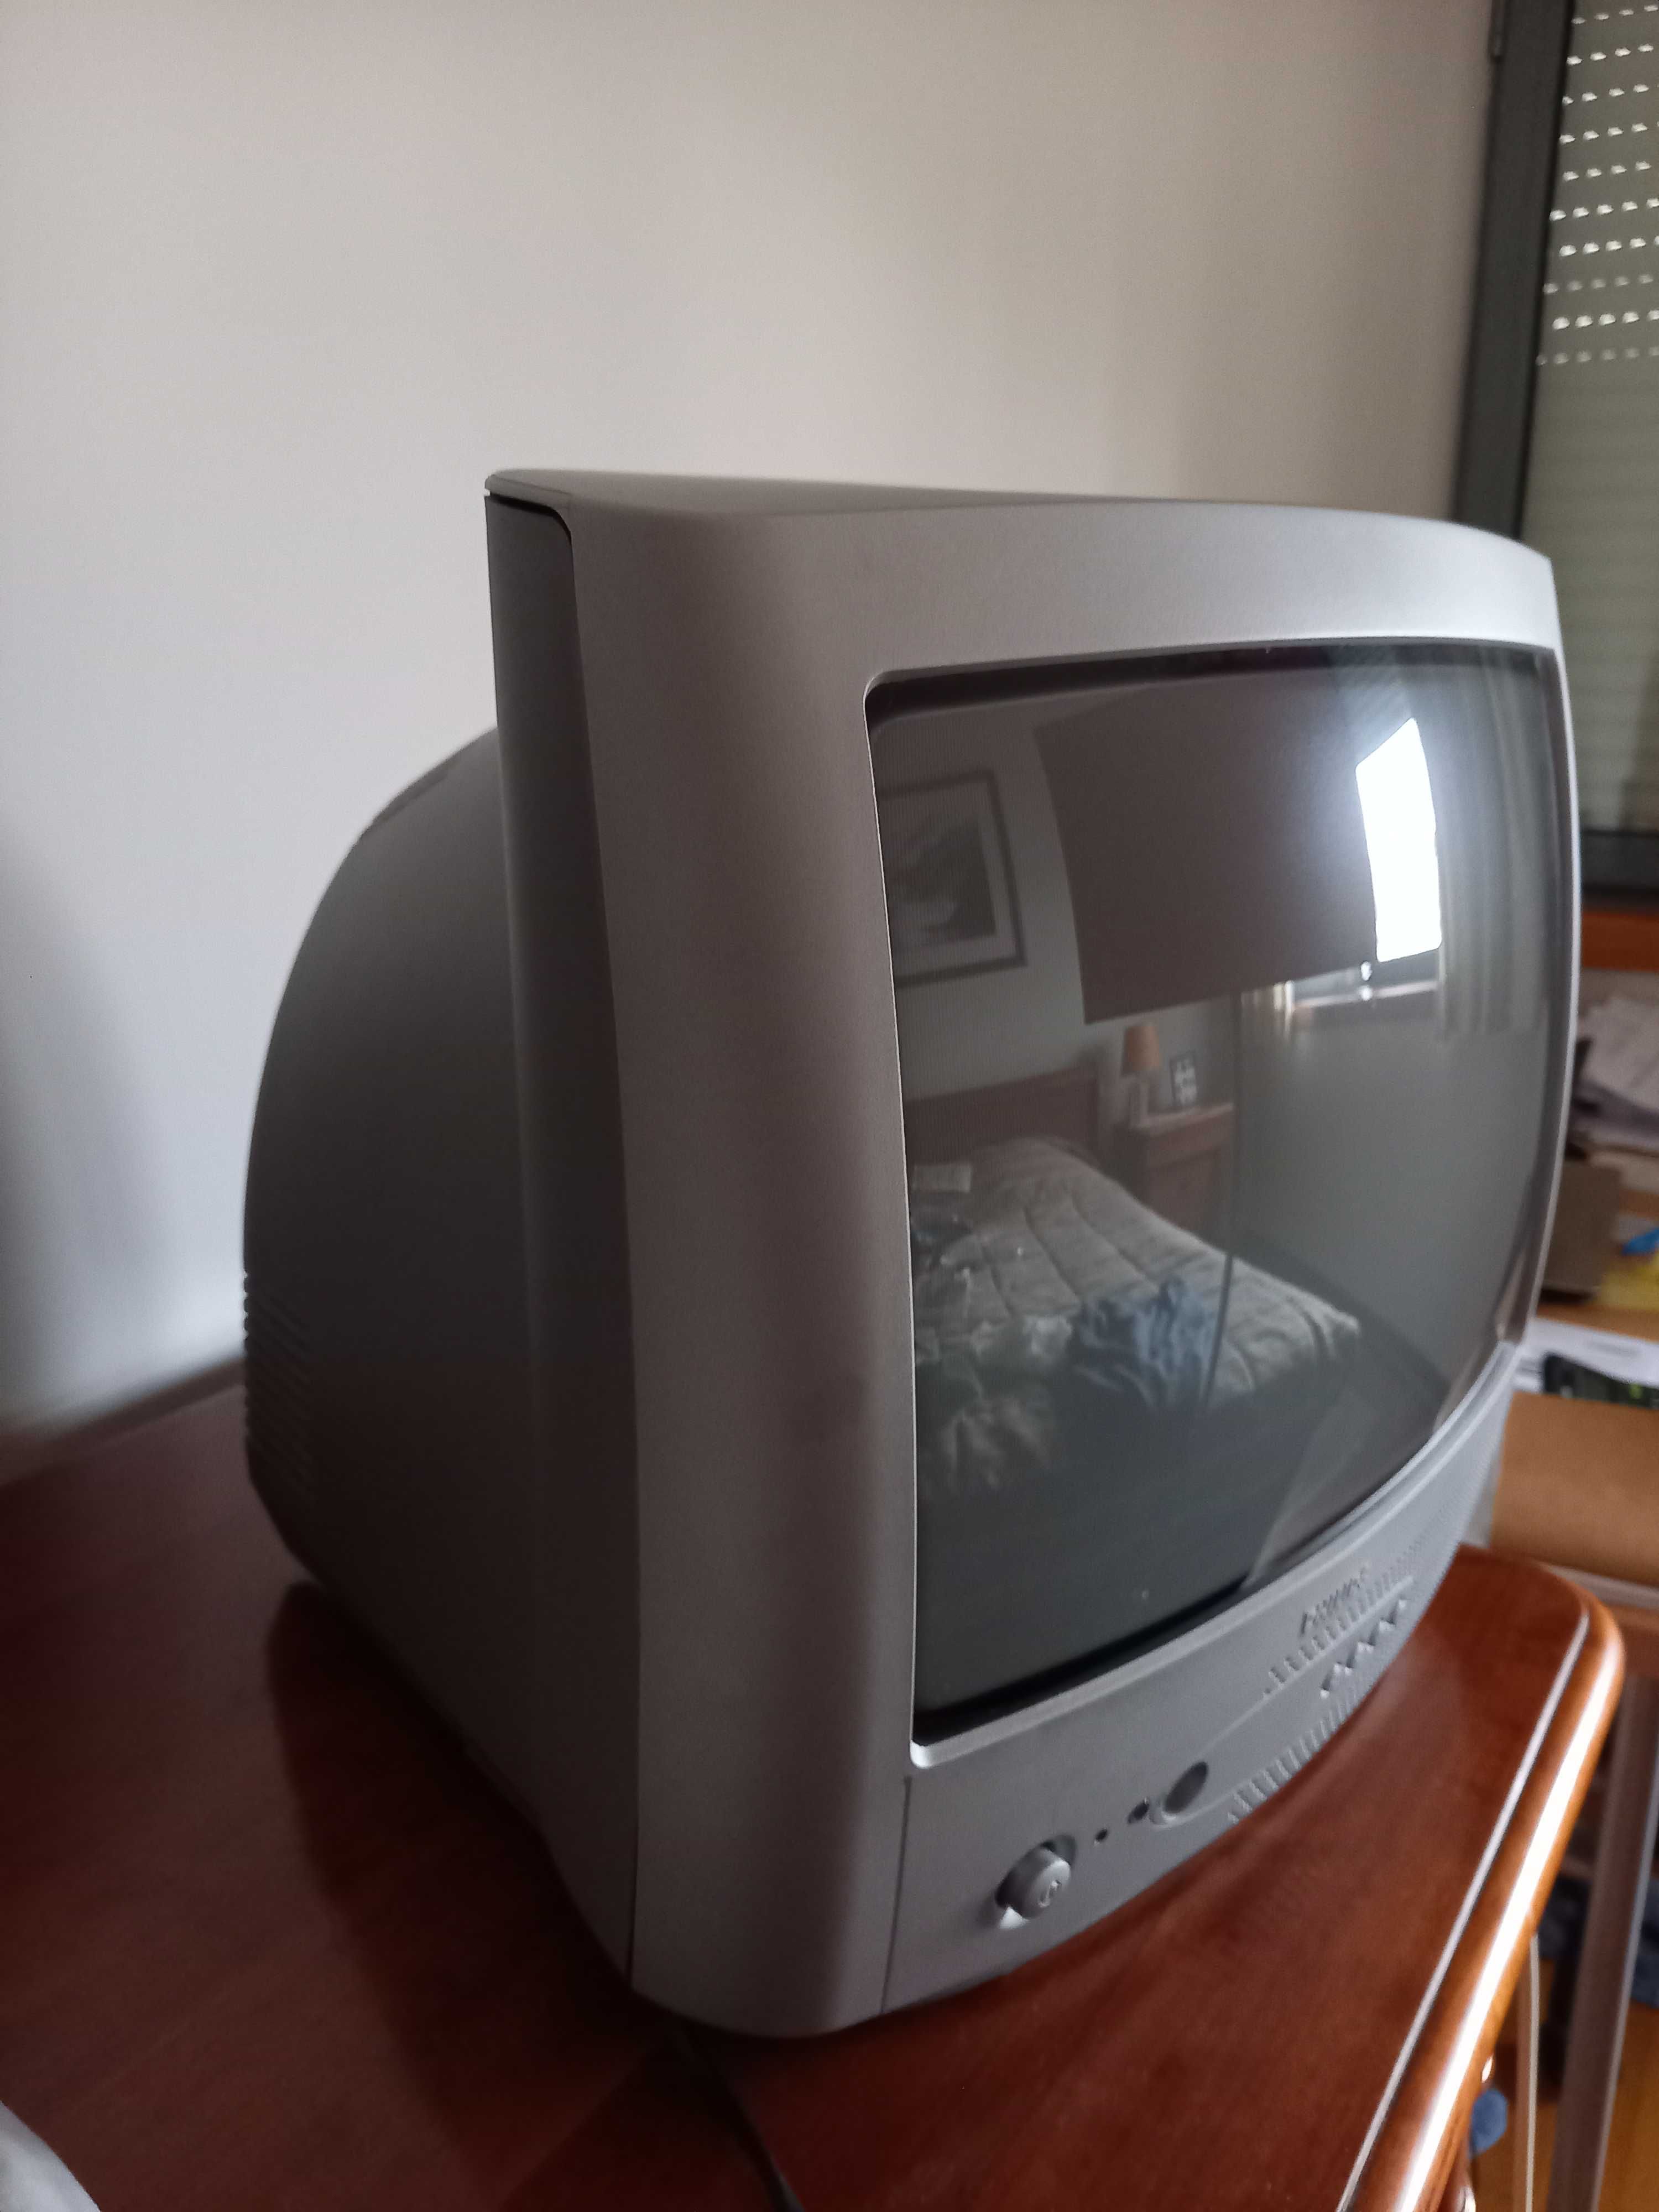 TV Philips - modelo antigo - em bom estado.